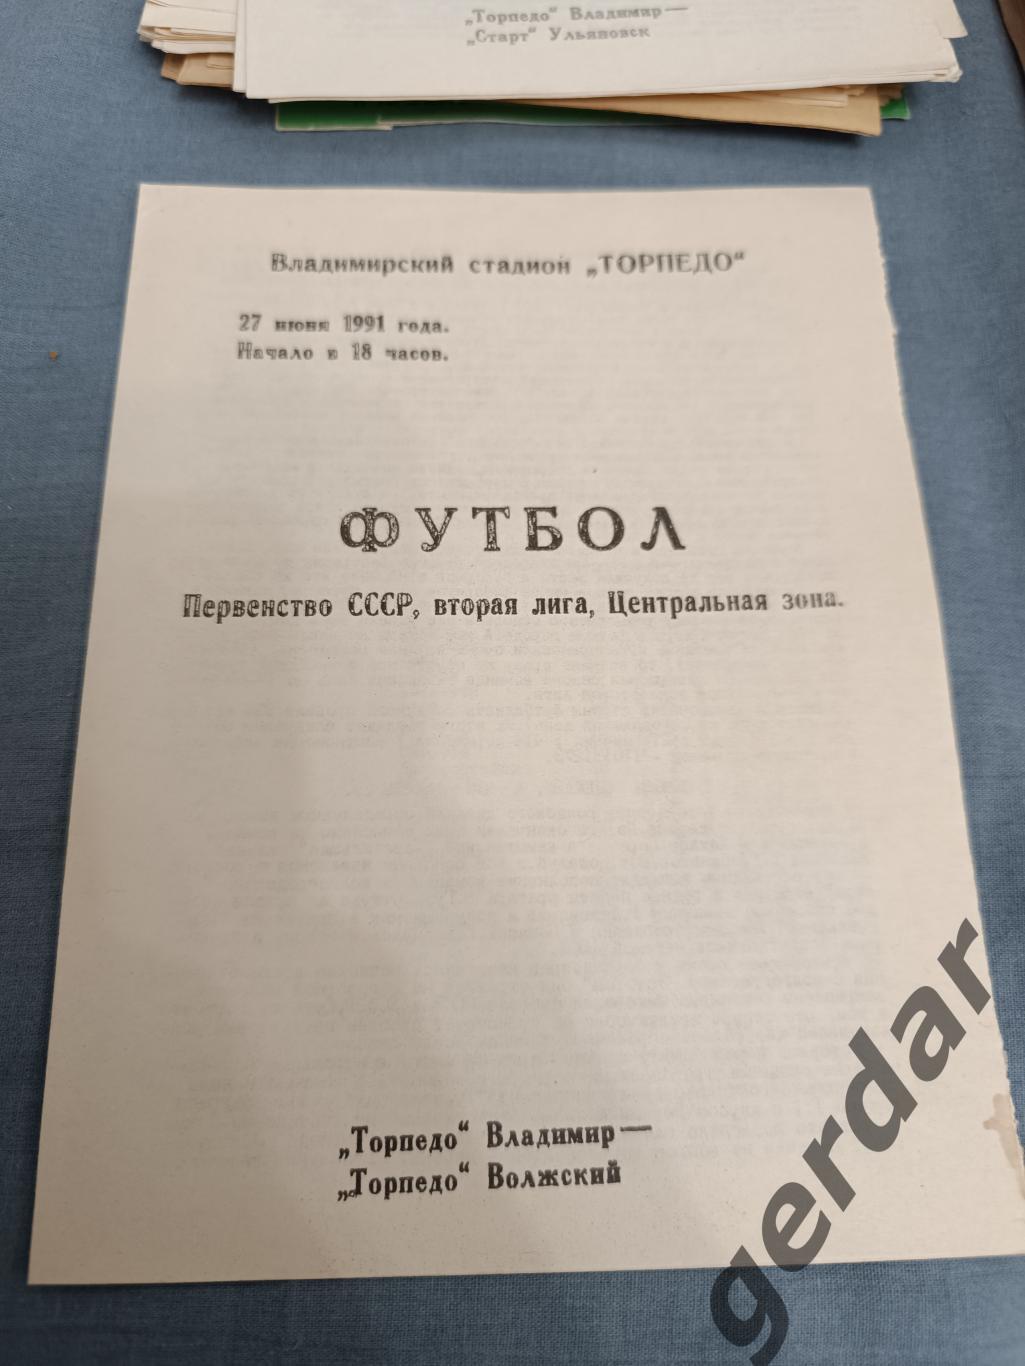 49 торпедо Владимир торпедо волжский1991